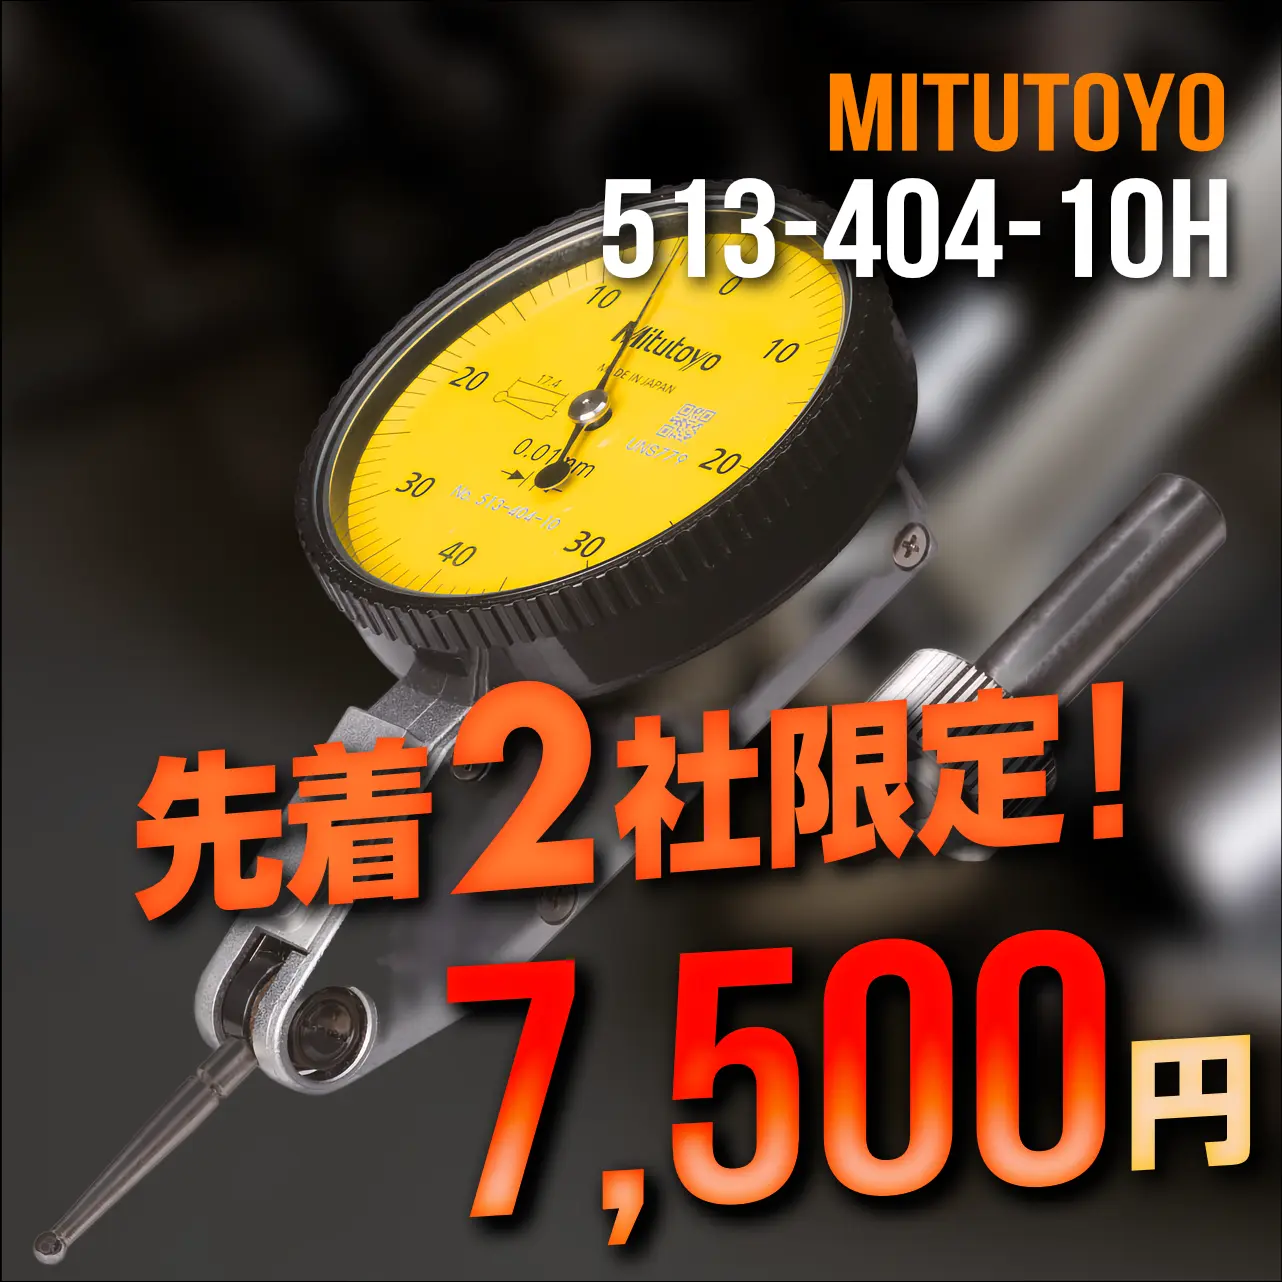 mitutoyo ミツトヨ 大特価 513-404-10H テストインジケータ 縦形・標準